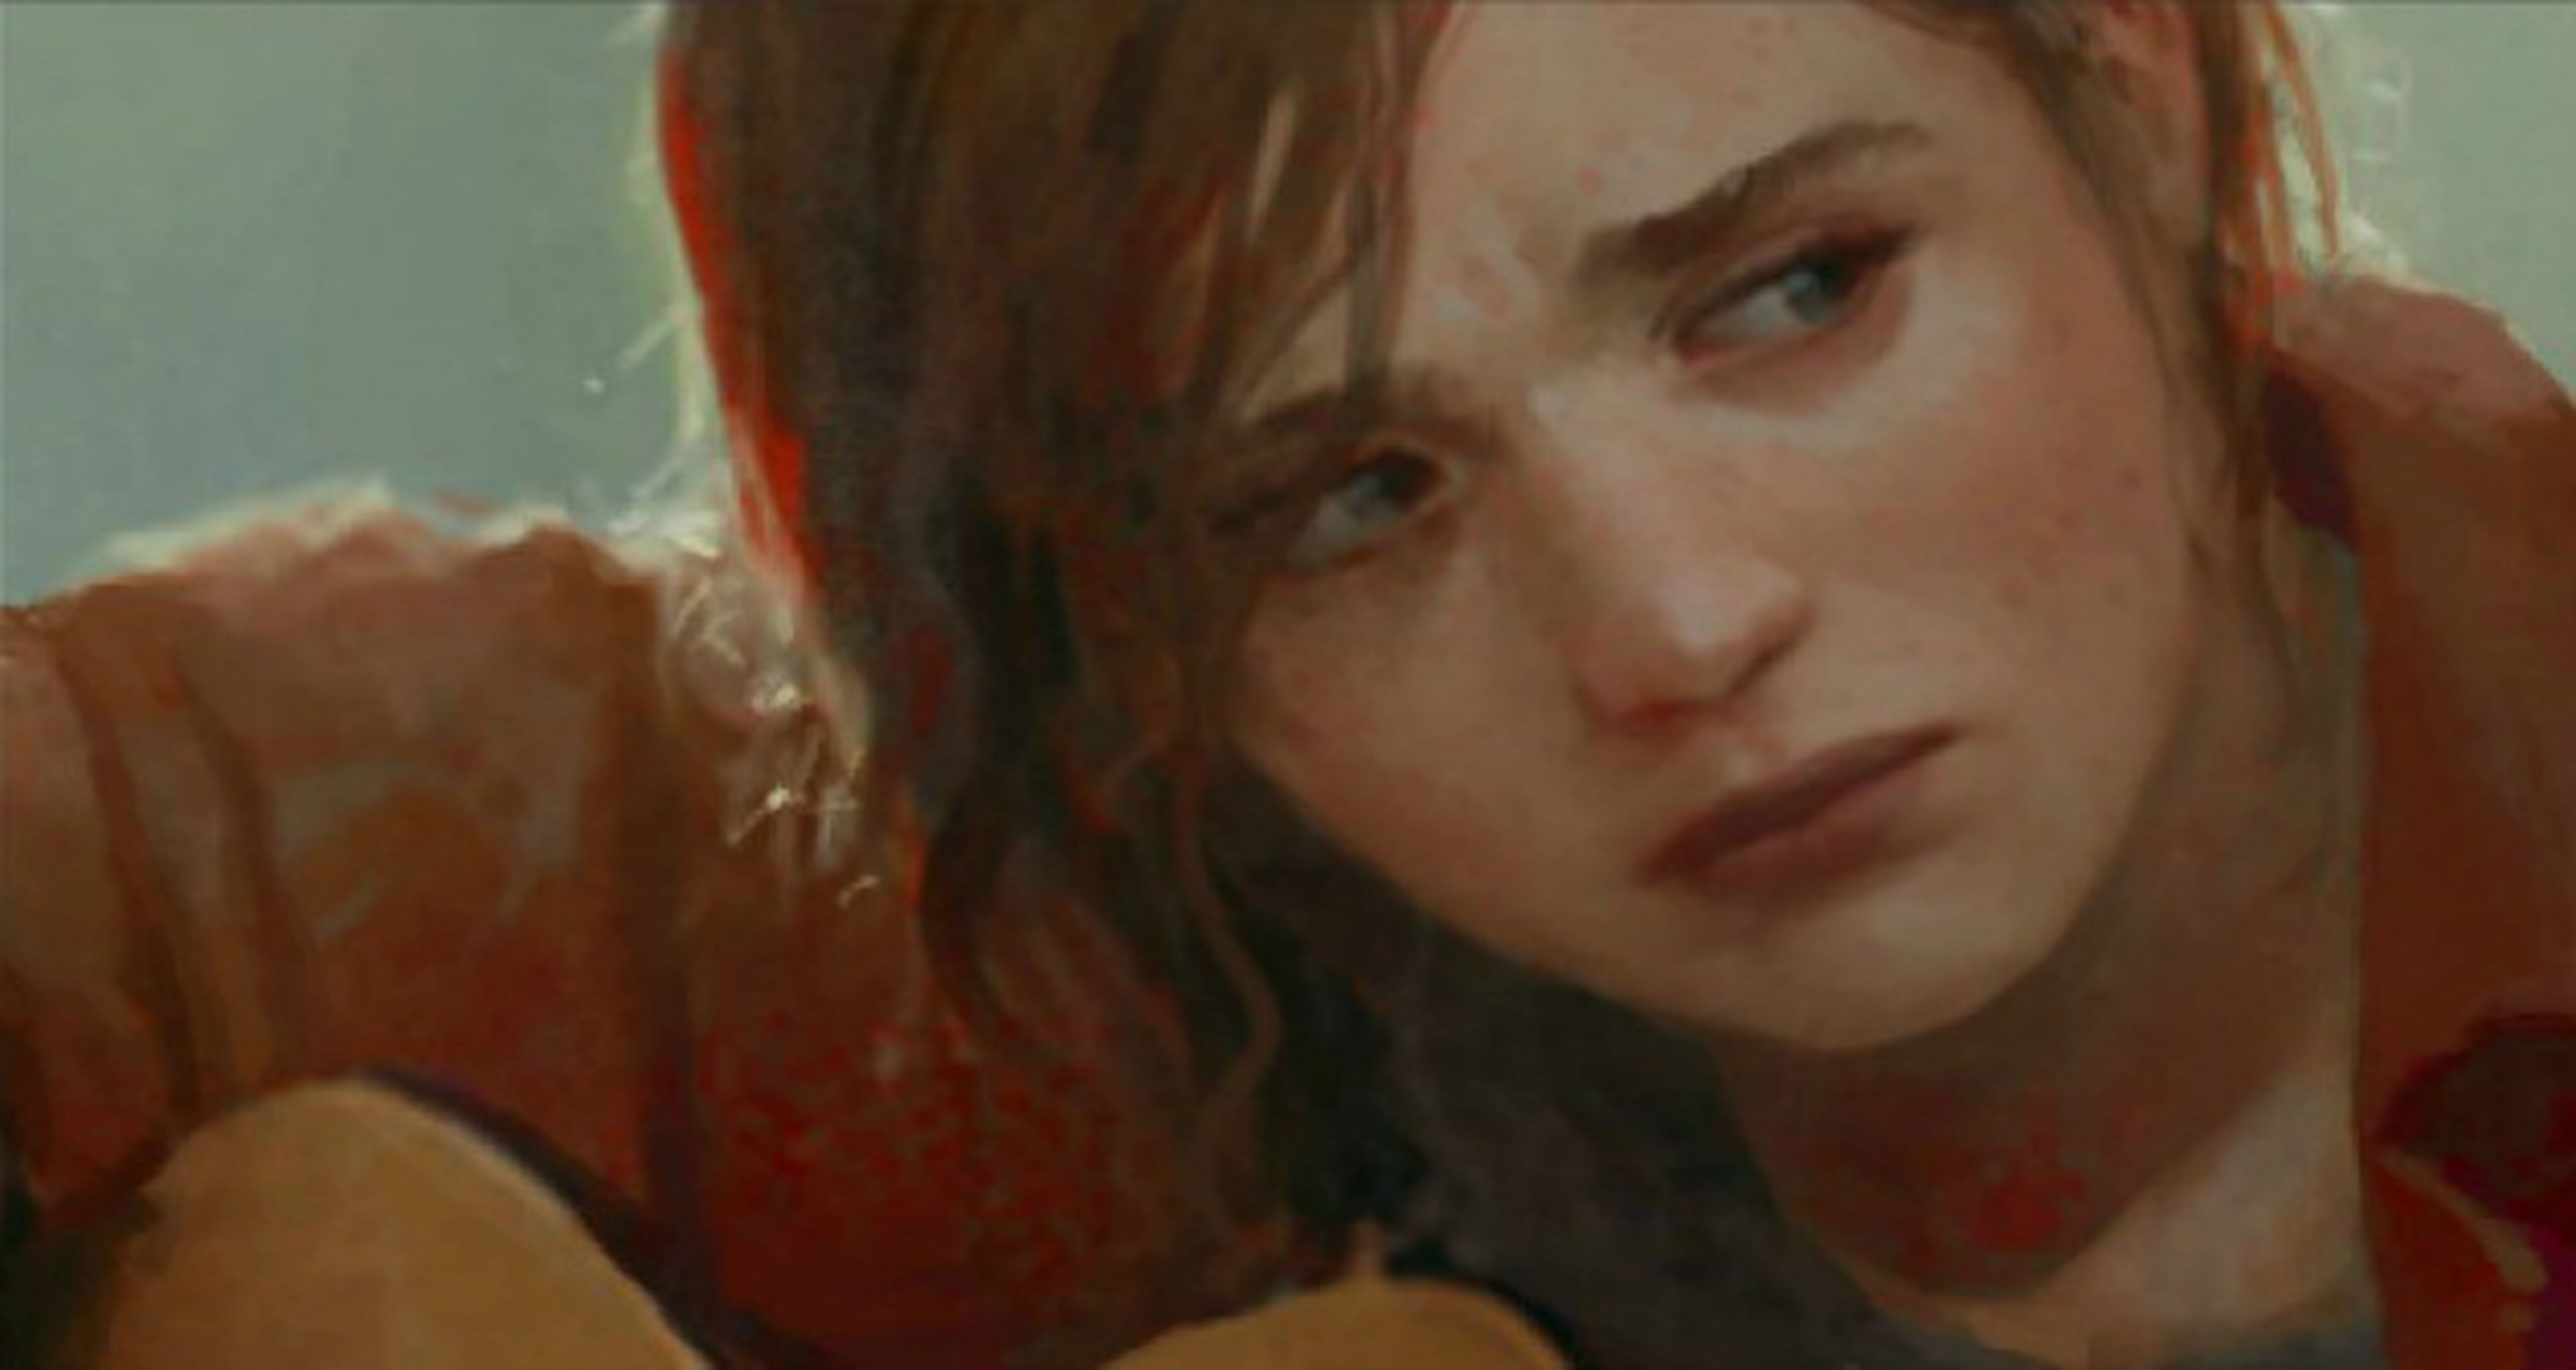 El ilustrador de The Last of Us completa la imagen de Ellie adulta